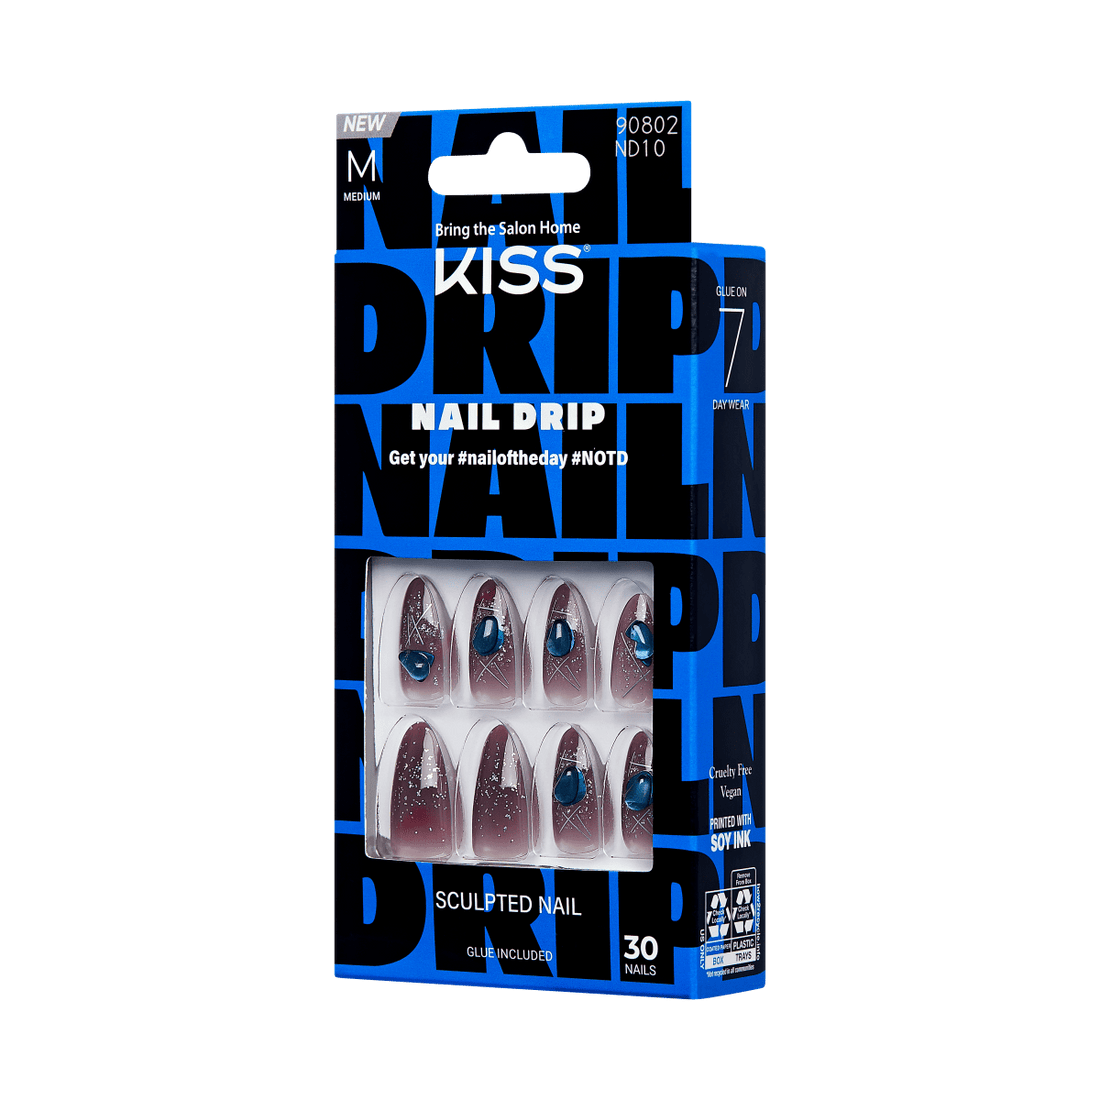 KISS Nail Drip Press-On Nails - We Drip